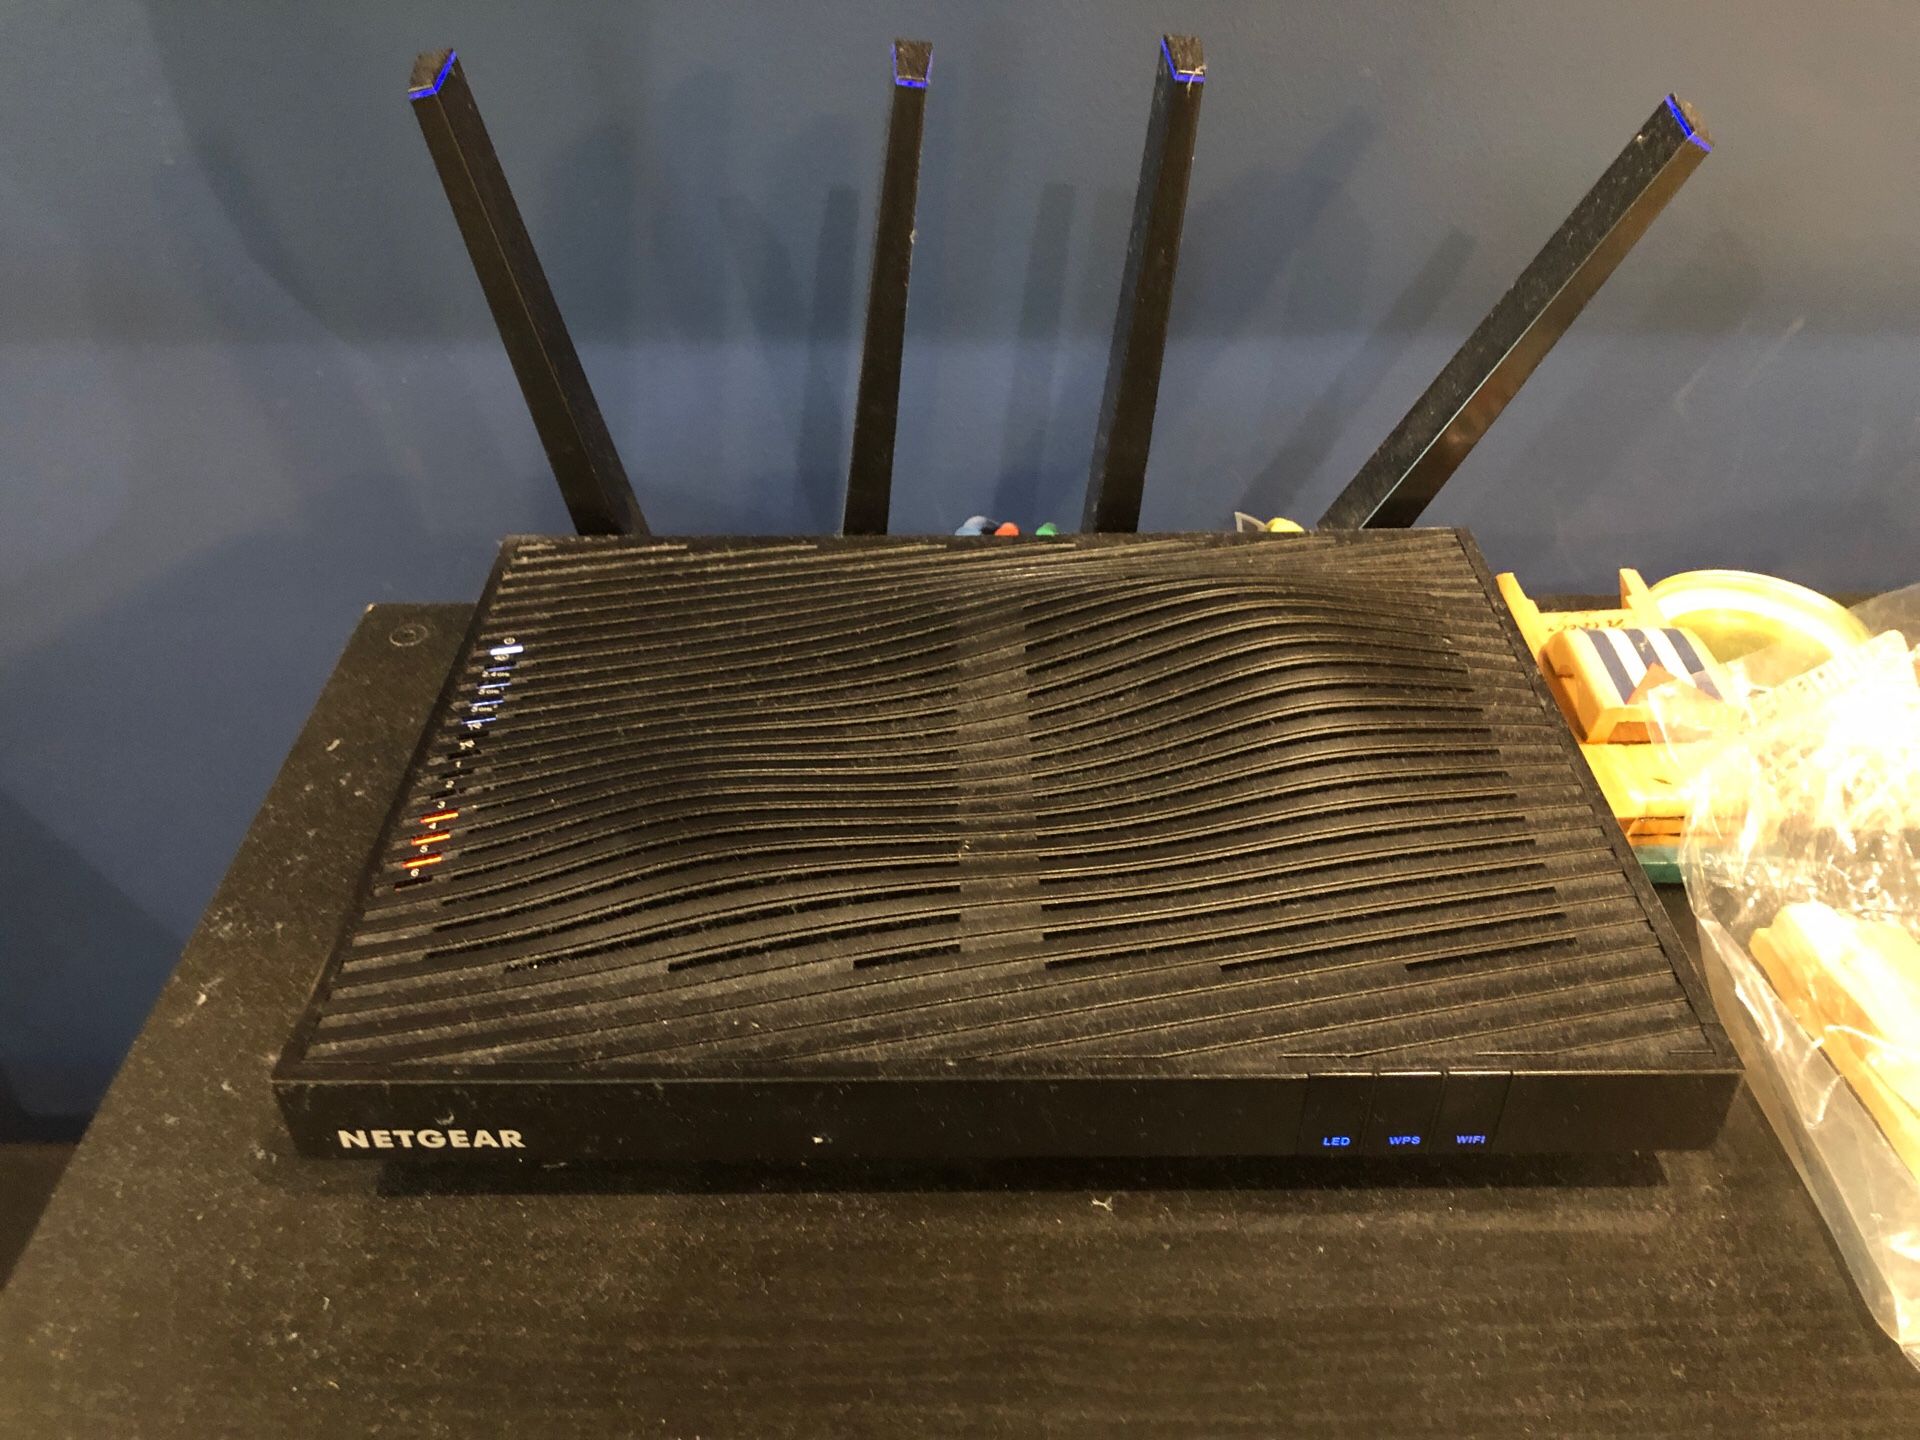 Netgear nighthawk x10 router